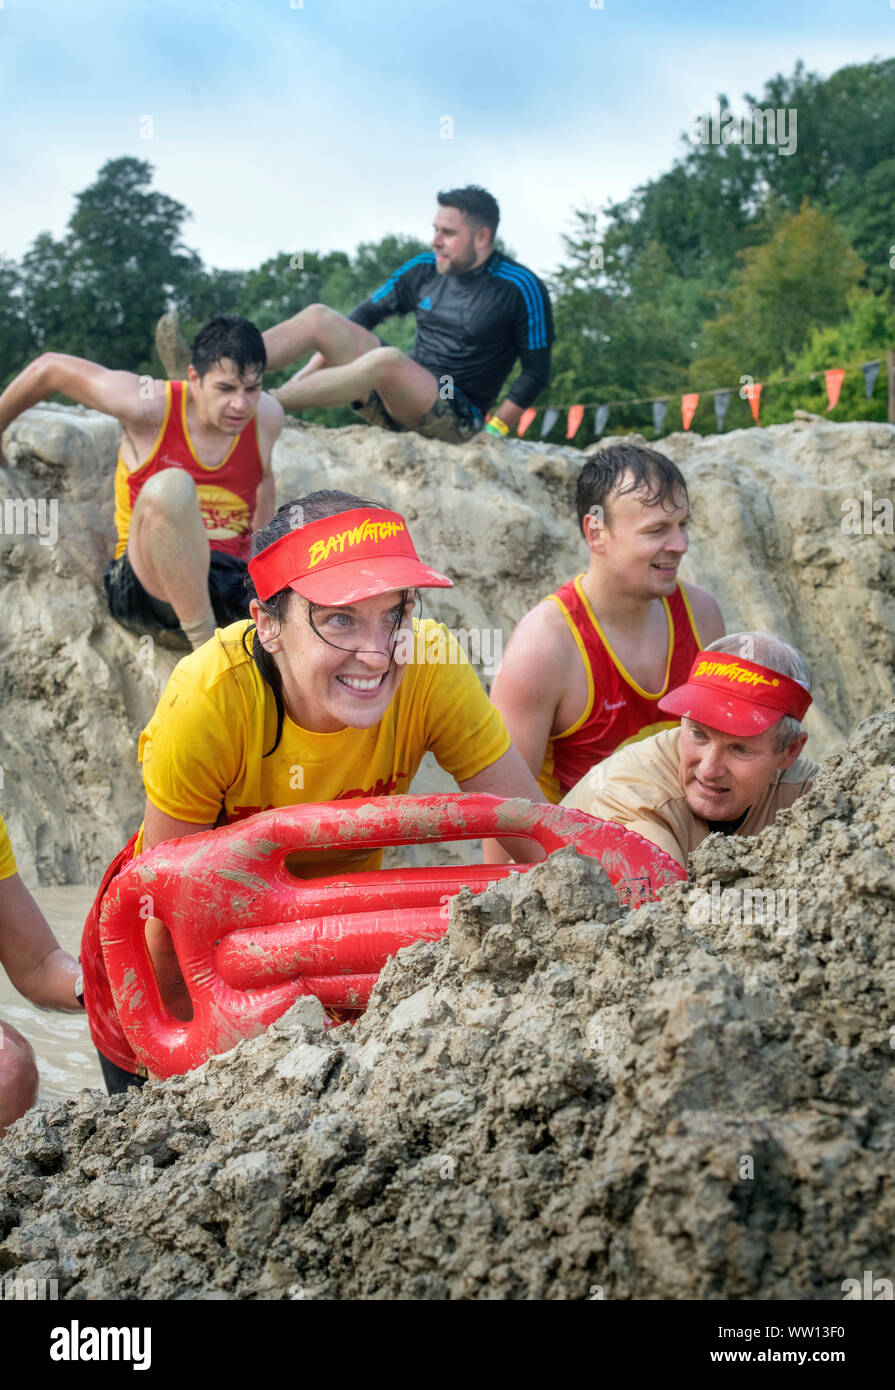 Une équipe de concurrents habillés comme des sauveteurs de Baywatch négocier la 'Mud kilomètre" à la dure épreuve d'endurance en Badminton Mudder Park, Gloucestershire U Banque D'Images